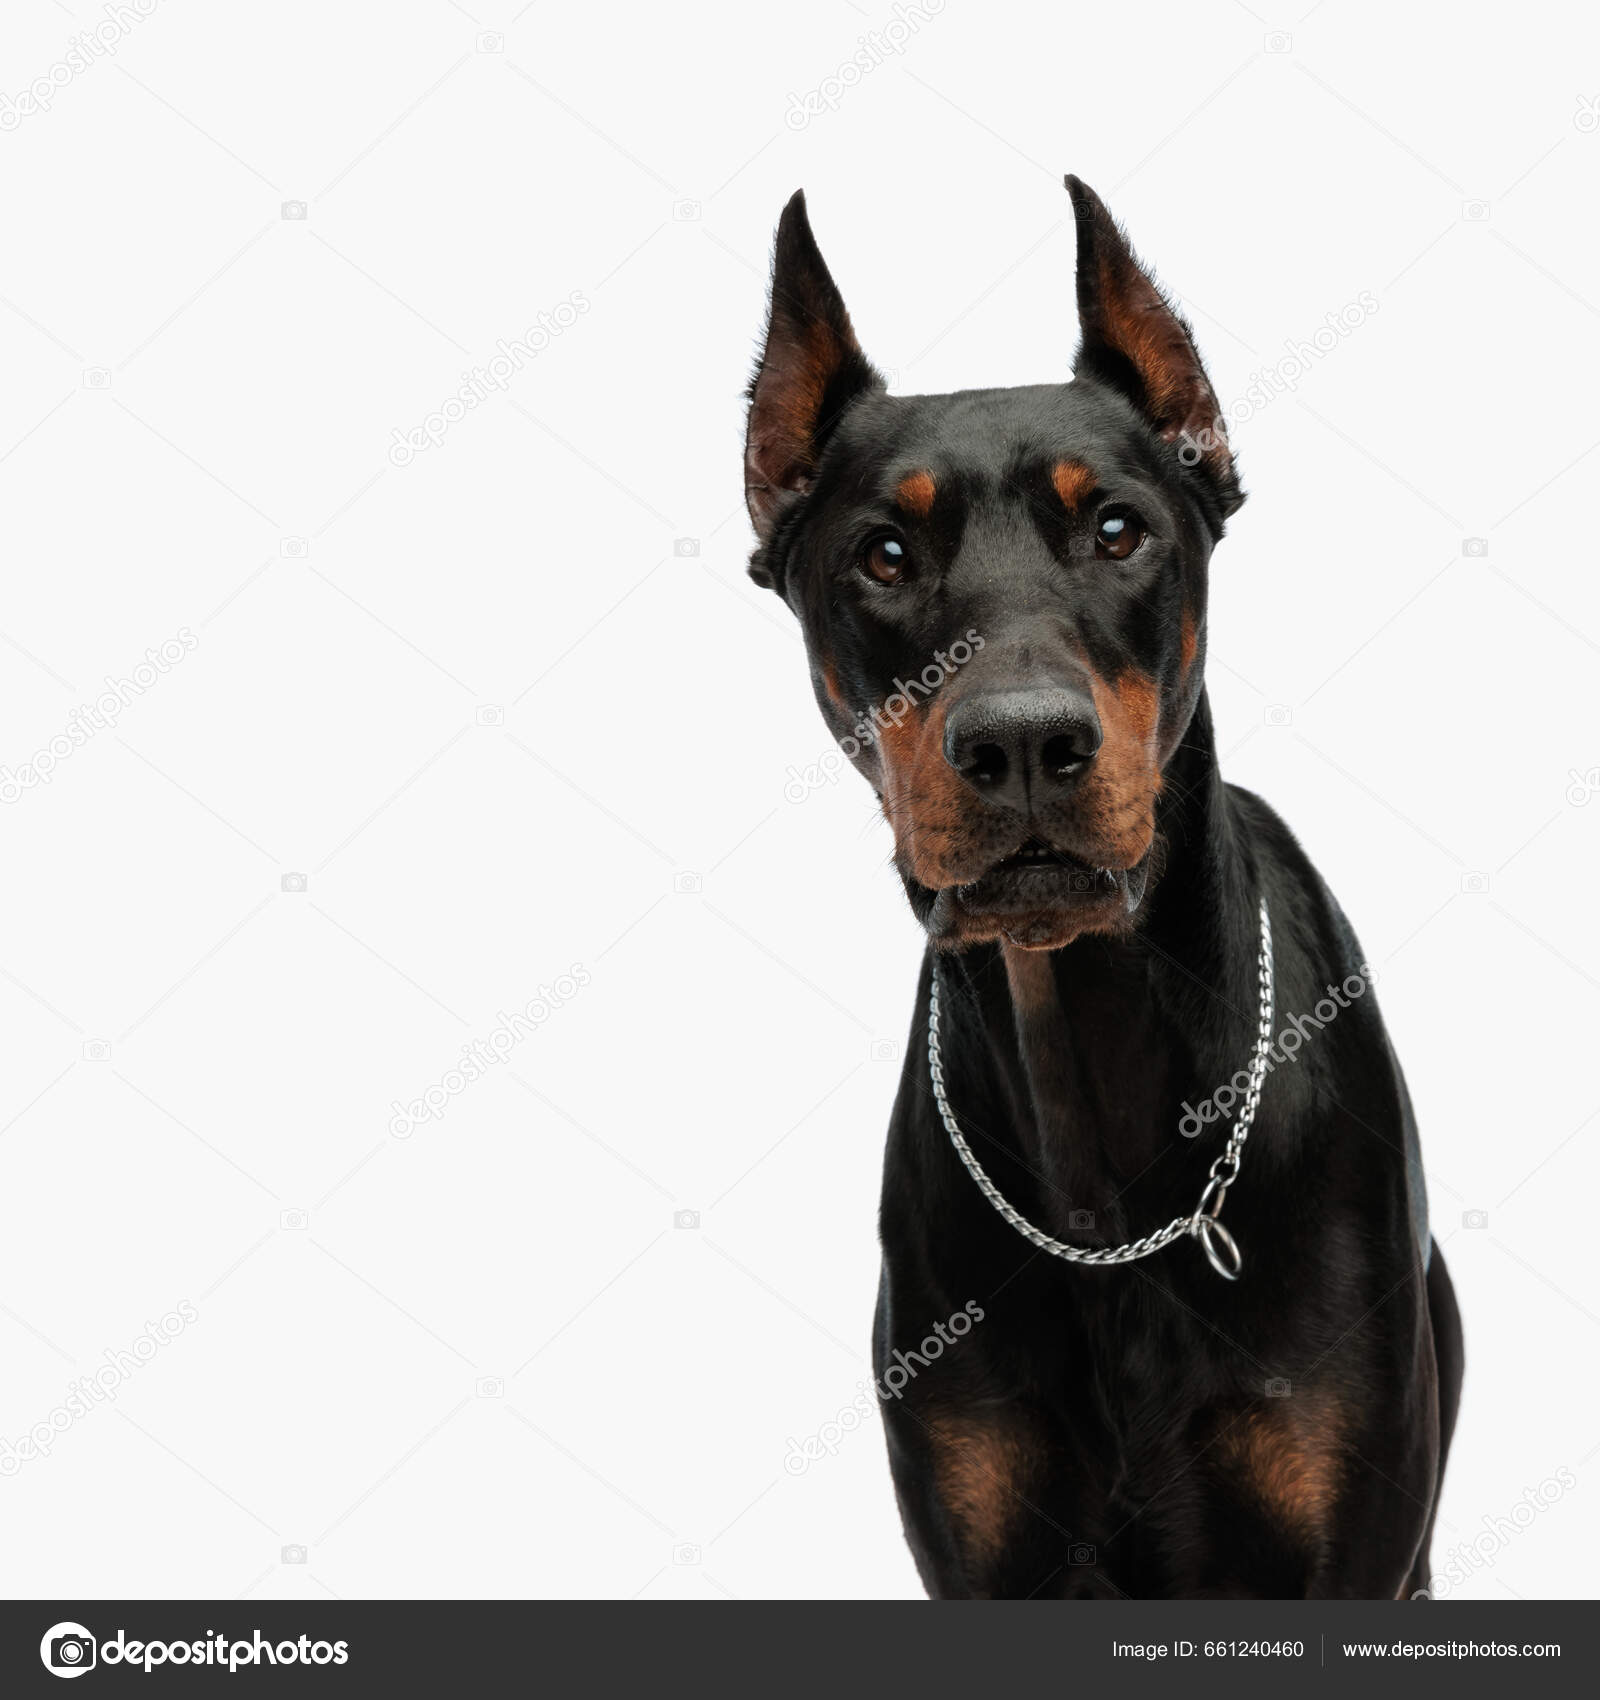 Doberman guard dogs images libres de droit, photos de Doberman guard dogs |  Depositphotos